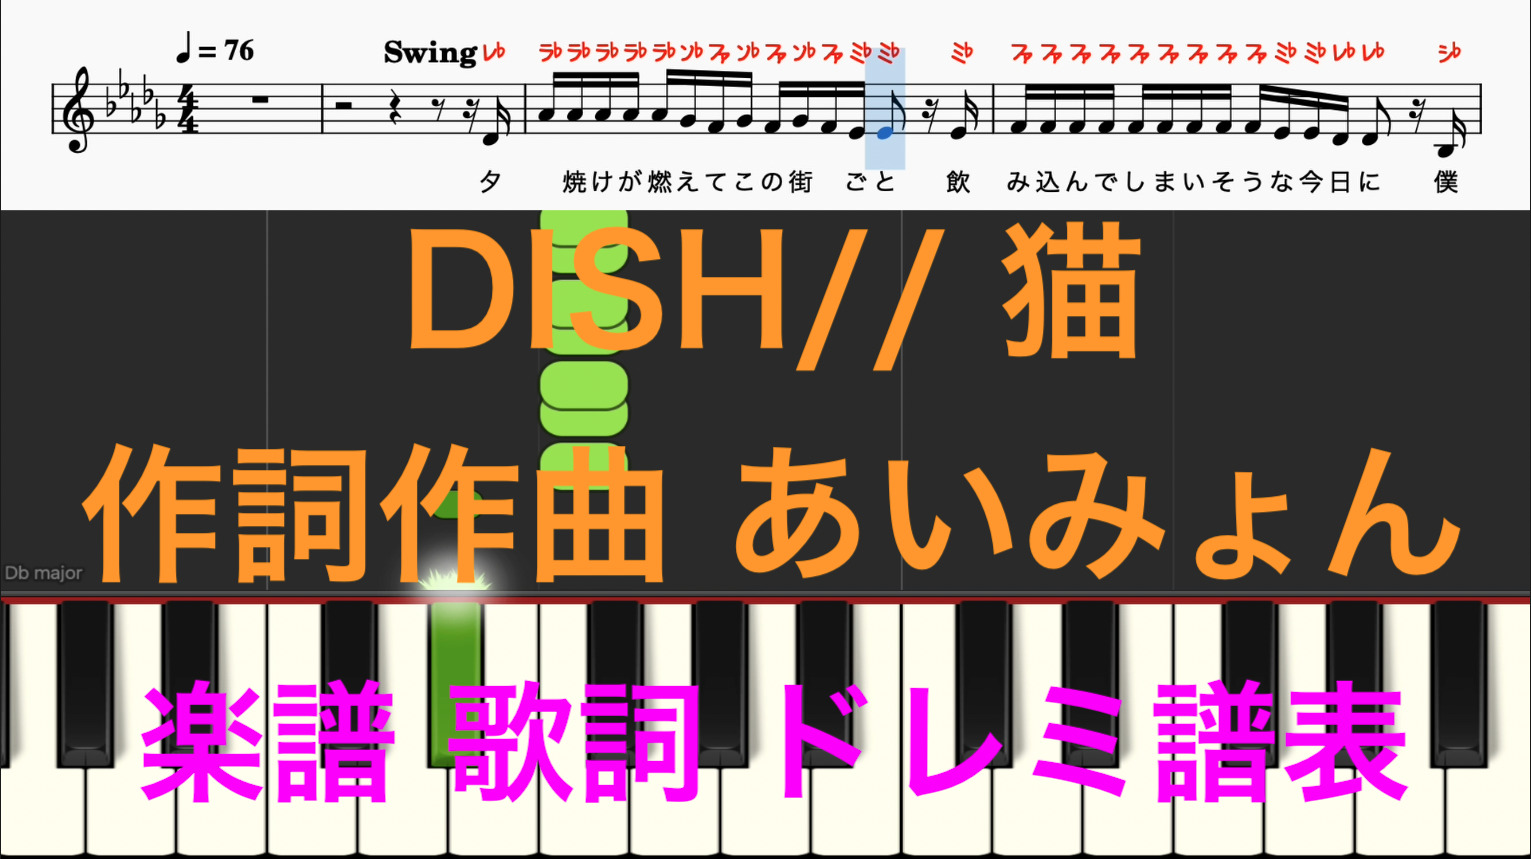 猫 DISH// 作詞作曲あいみょん ピアノ楽譜 オカリナで吹ける曲 